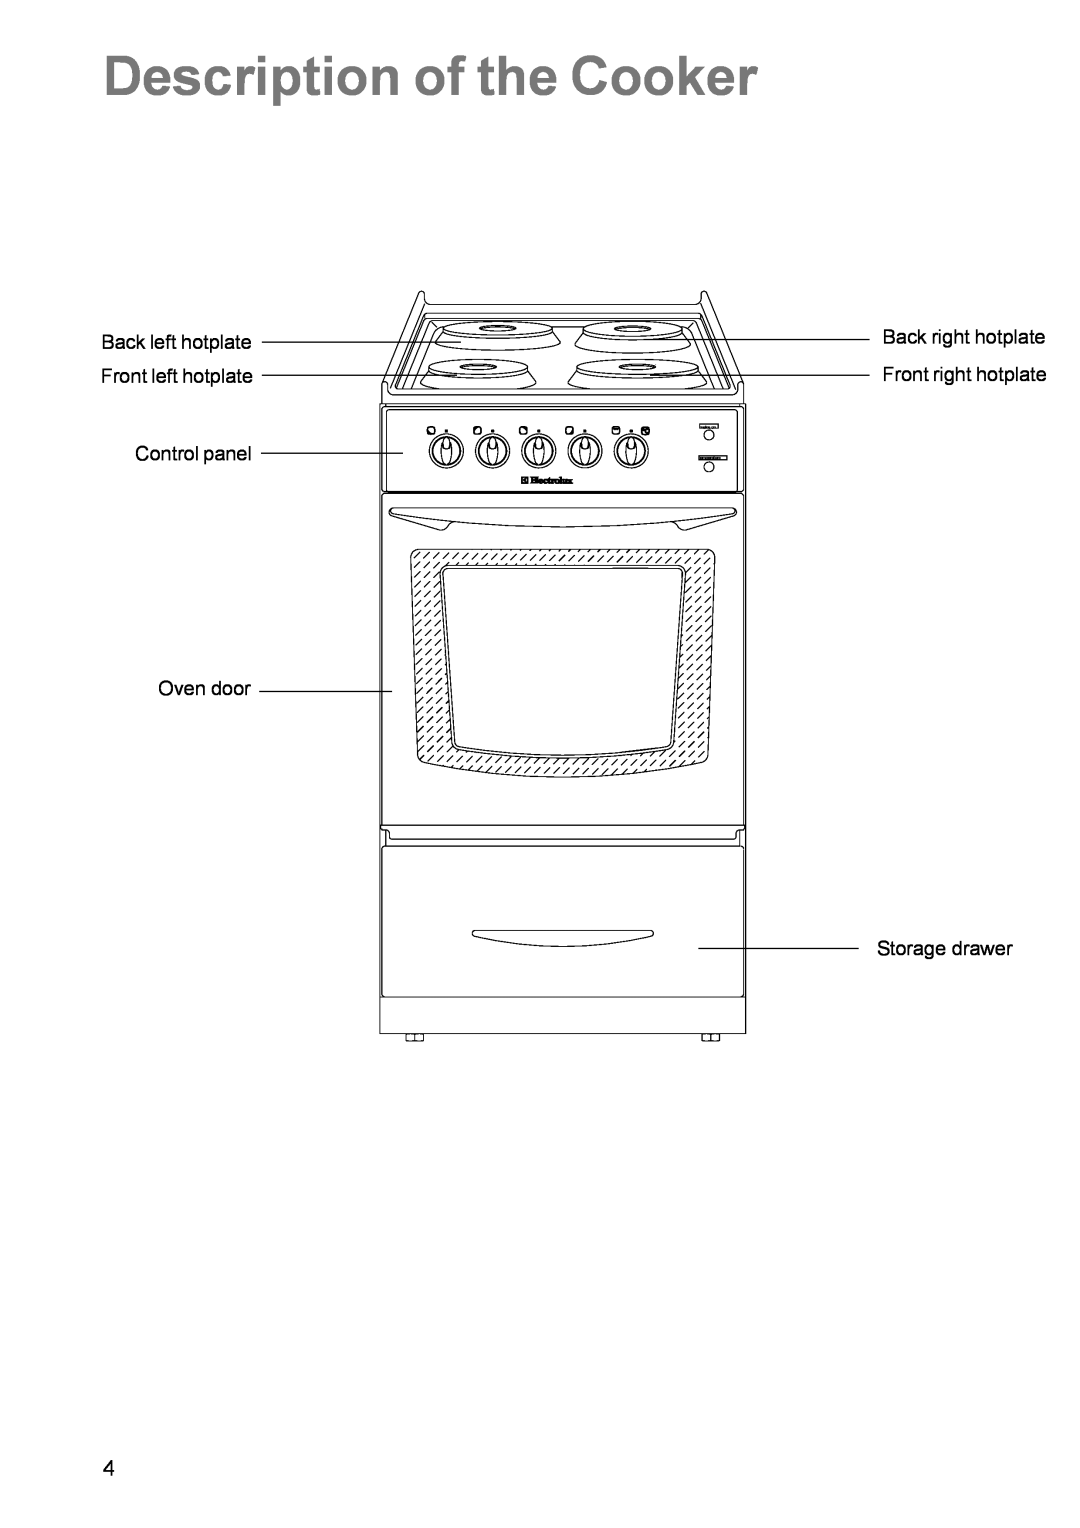 Electrolux EK 5741 Description of the Cooker, Back left hotplate Front left hotplate Control panel, mains on temperature 